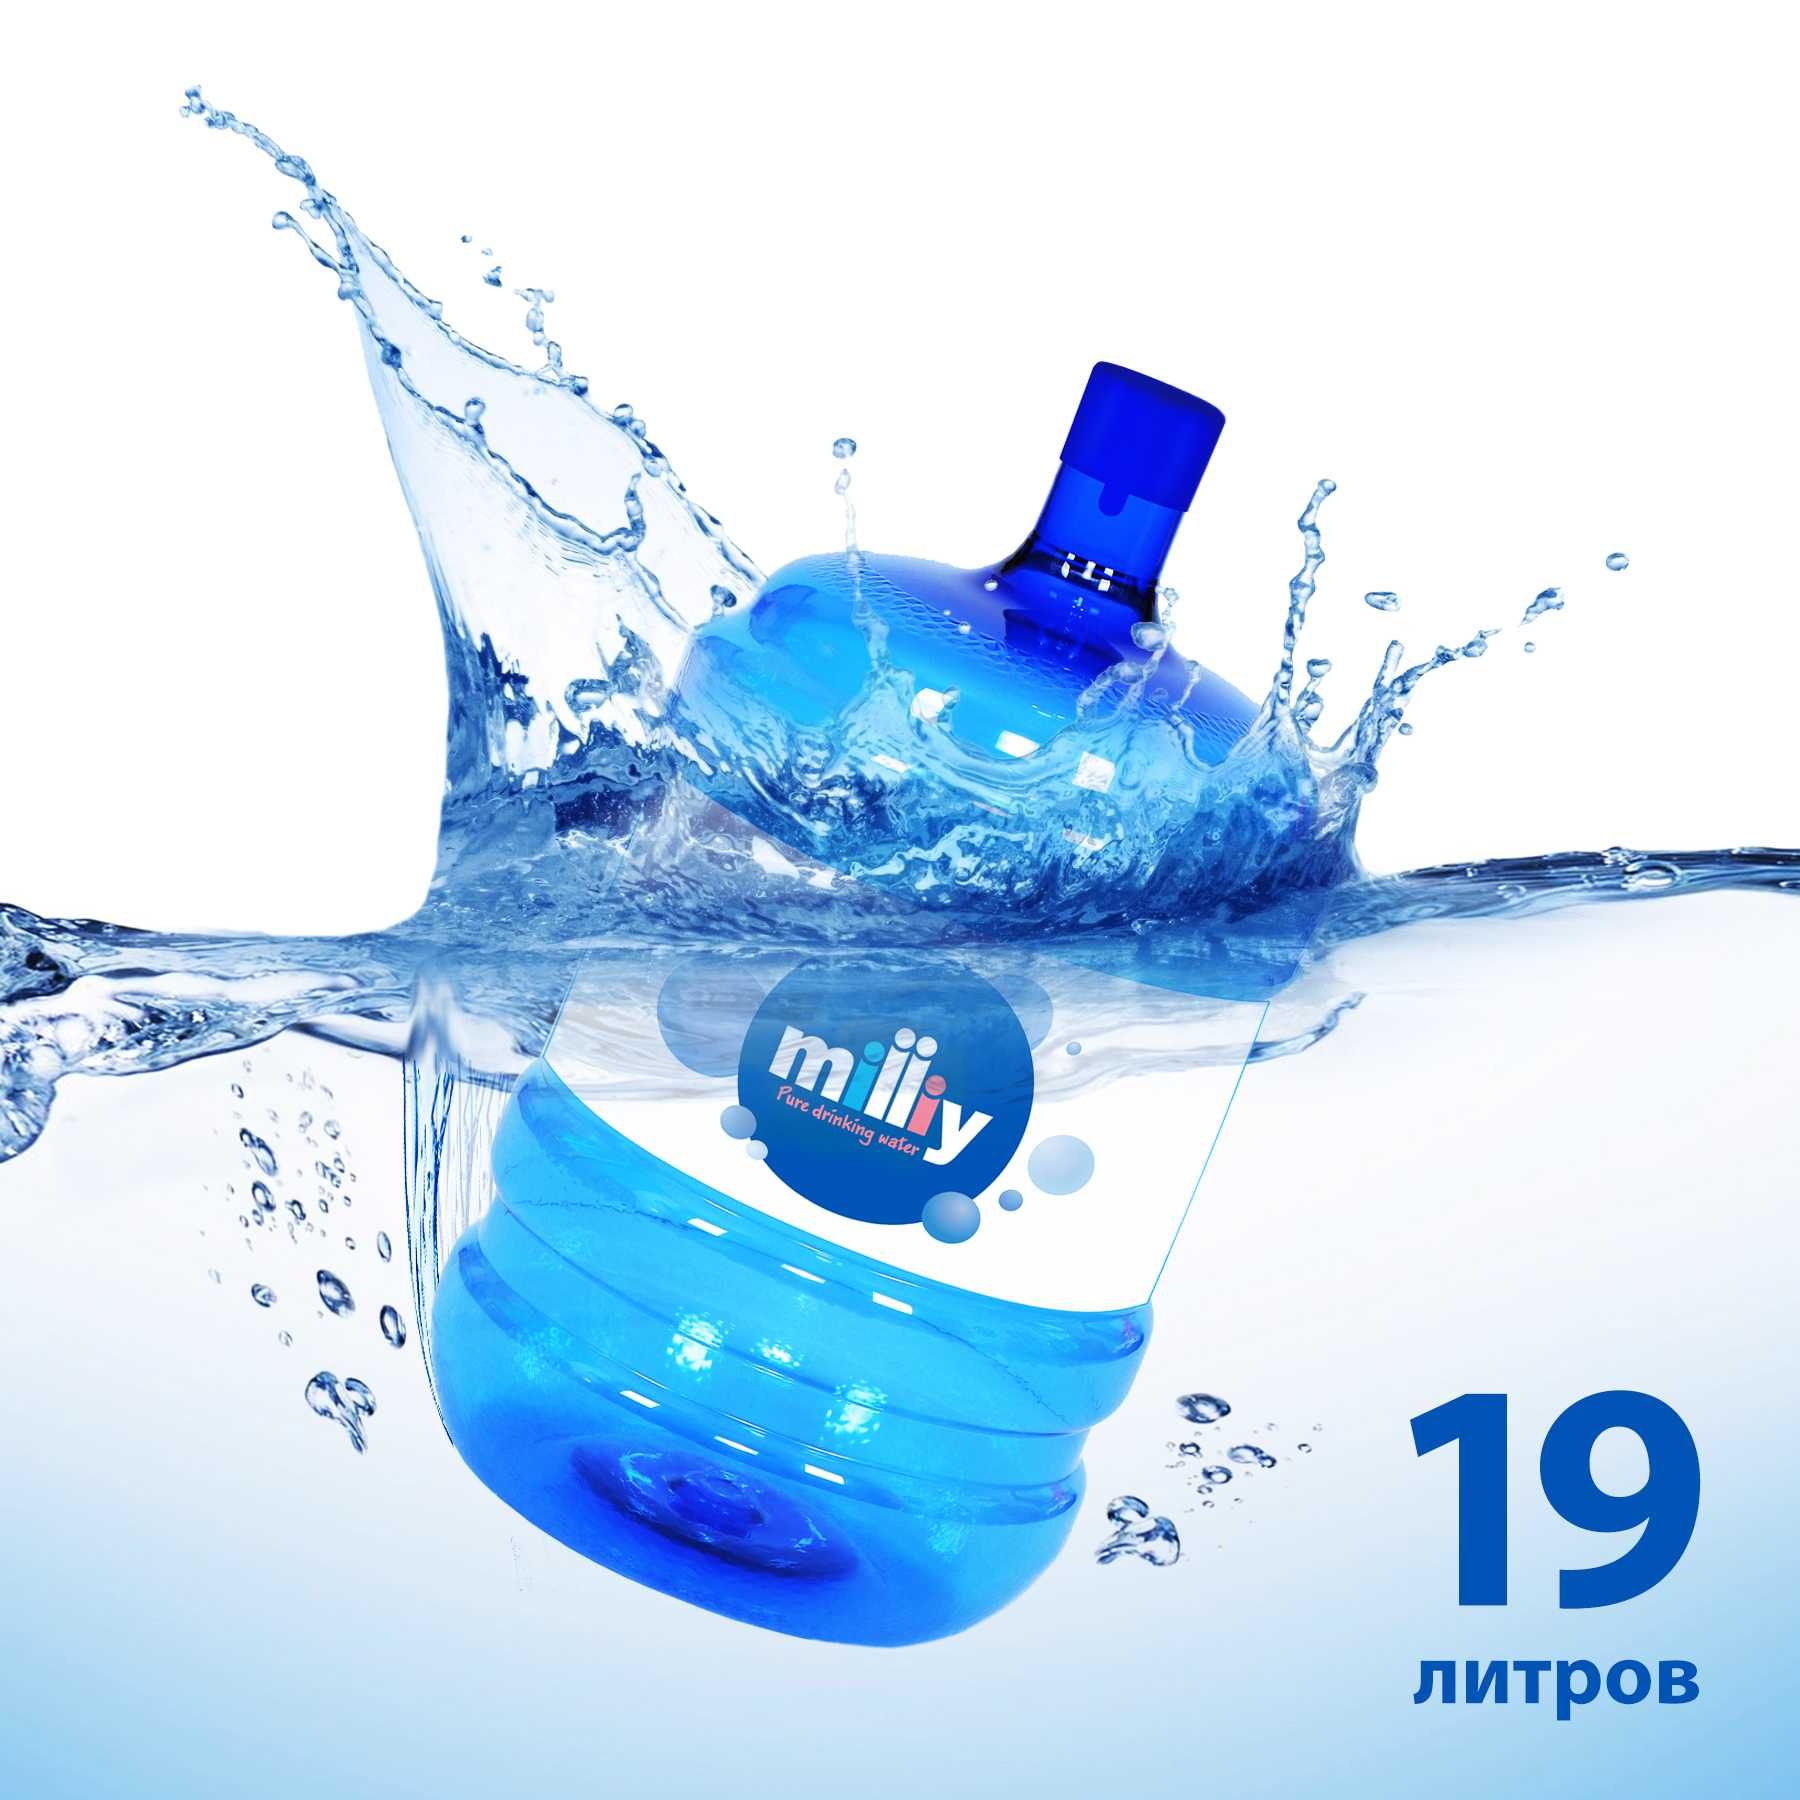 19-ти литровая вода / 19 litrli suv